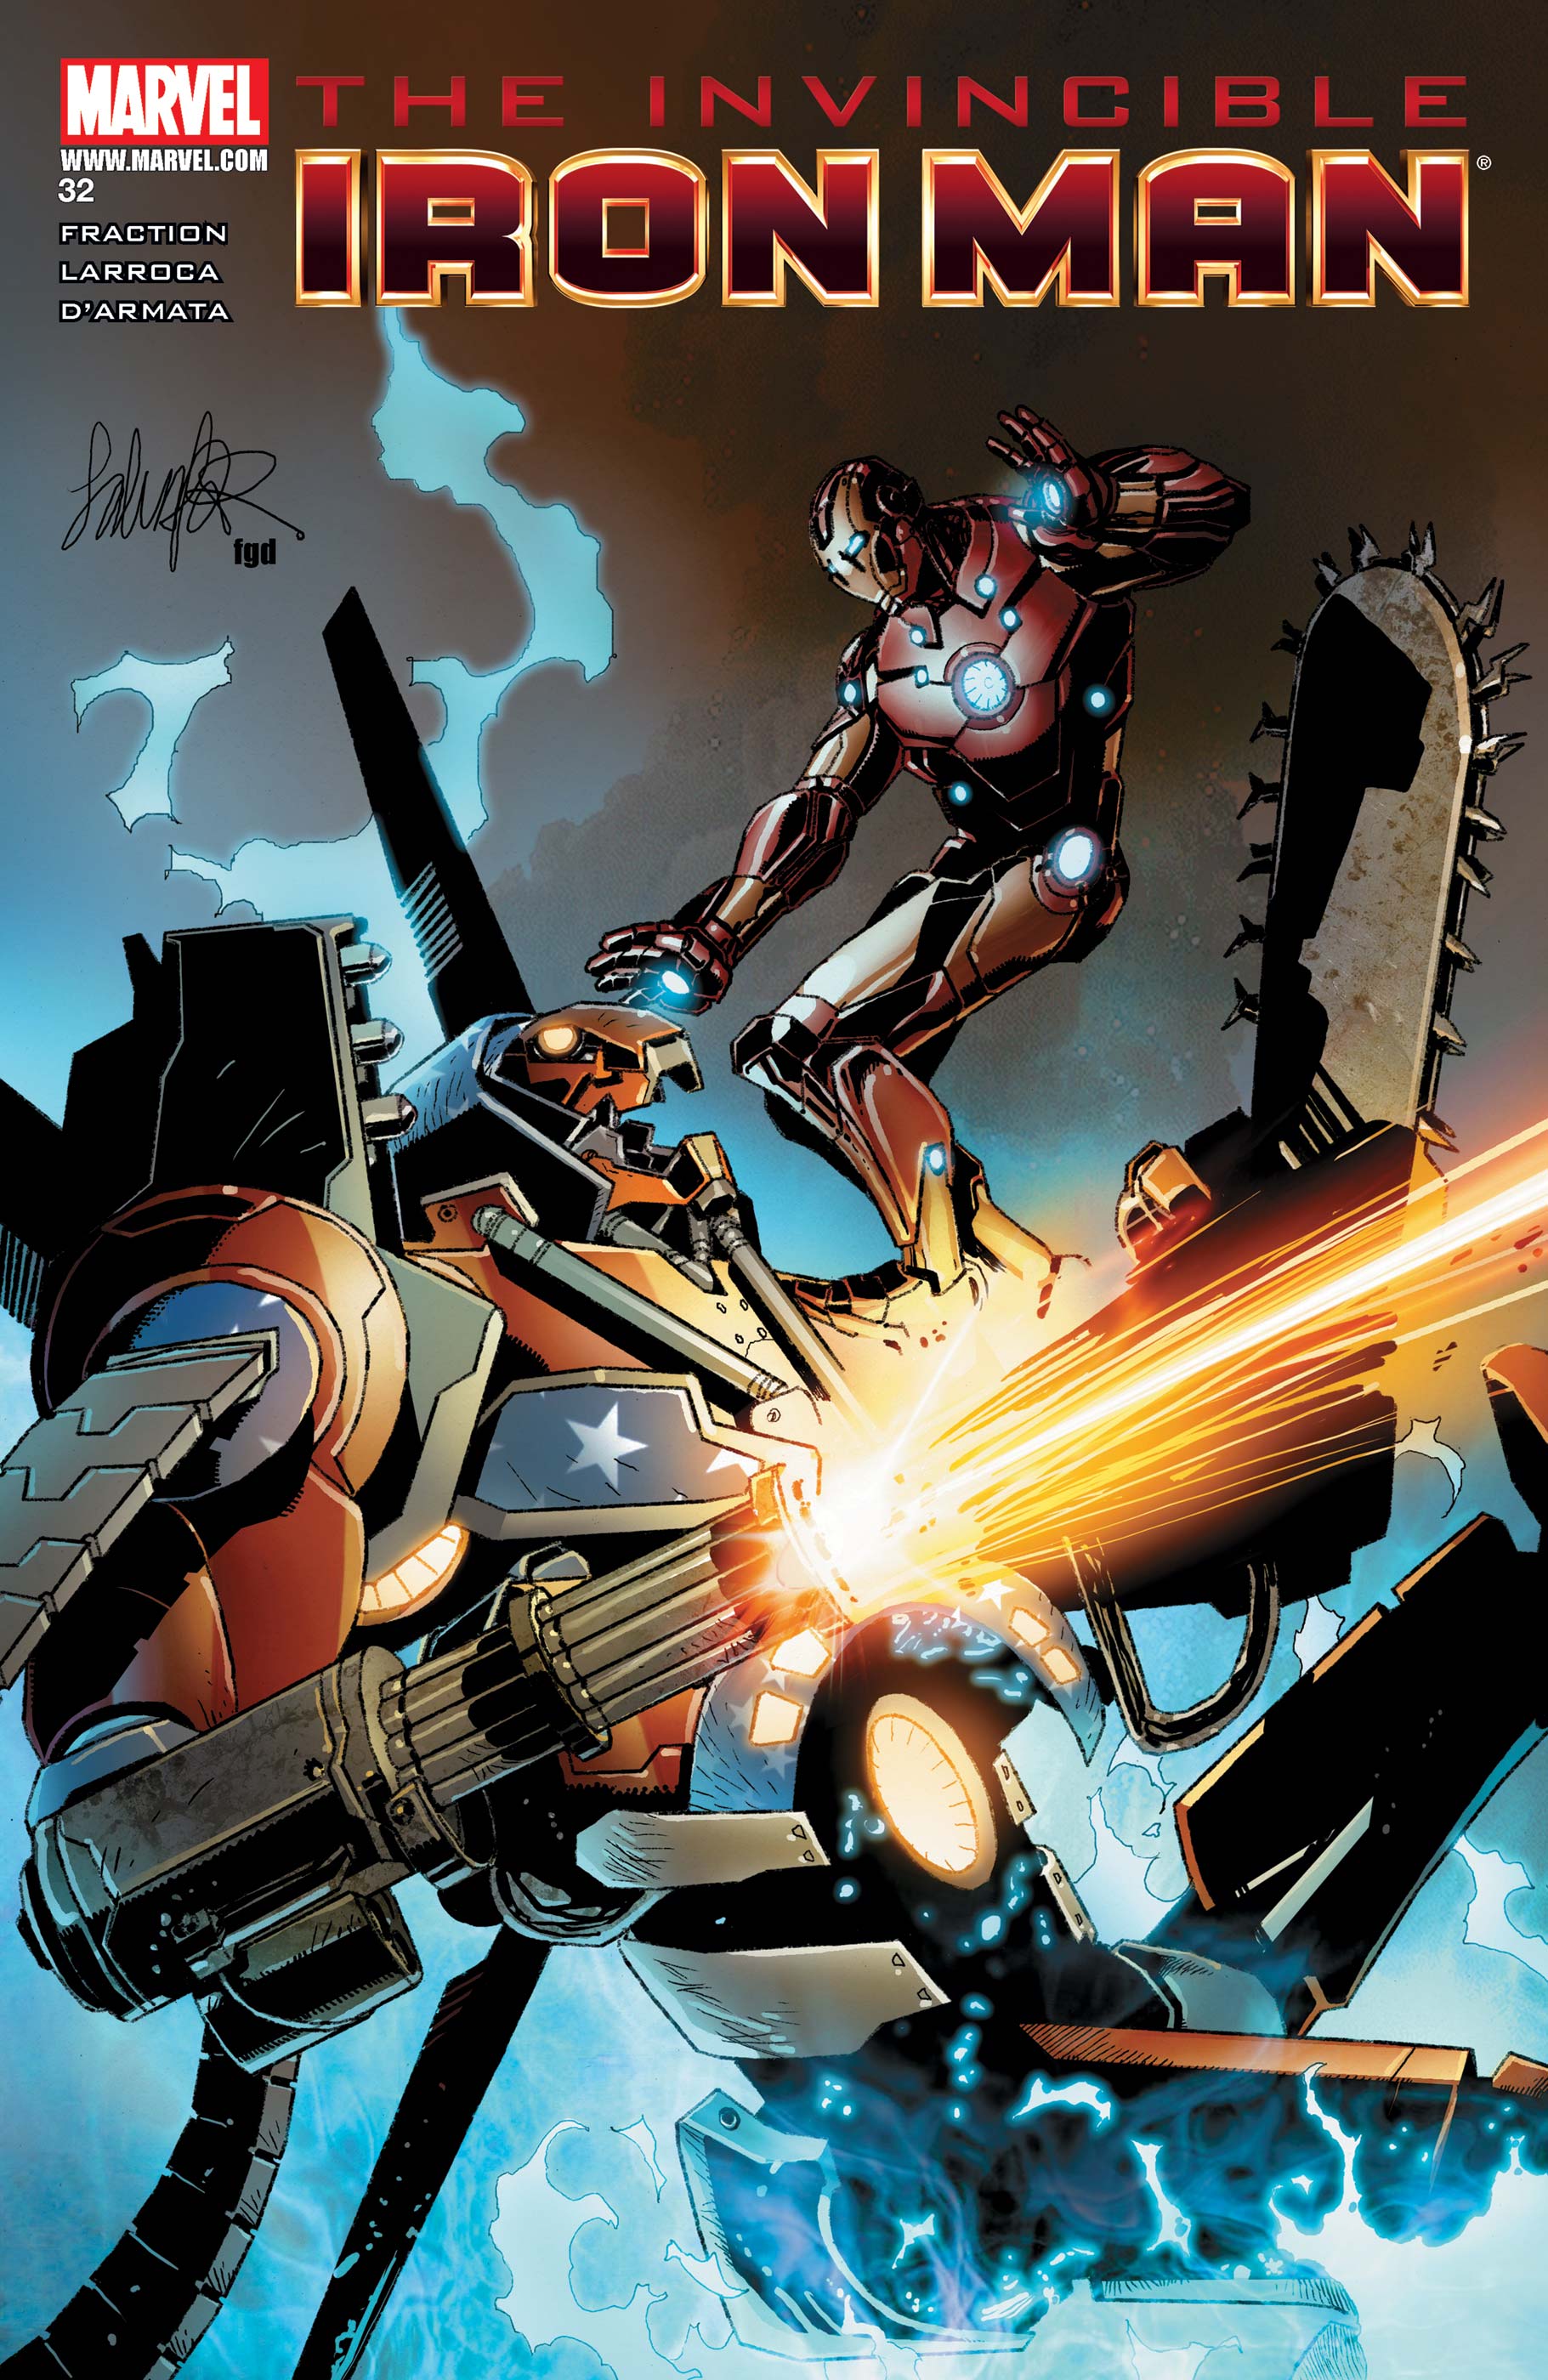 Invincible Iron Man (2008) #32